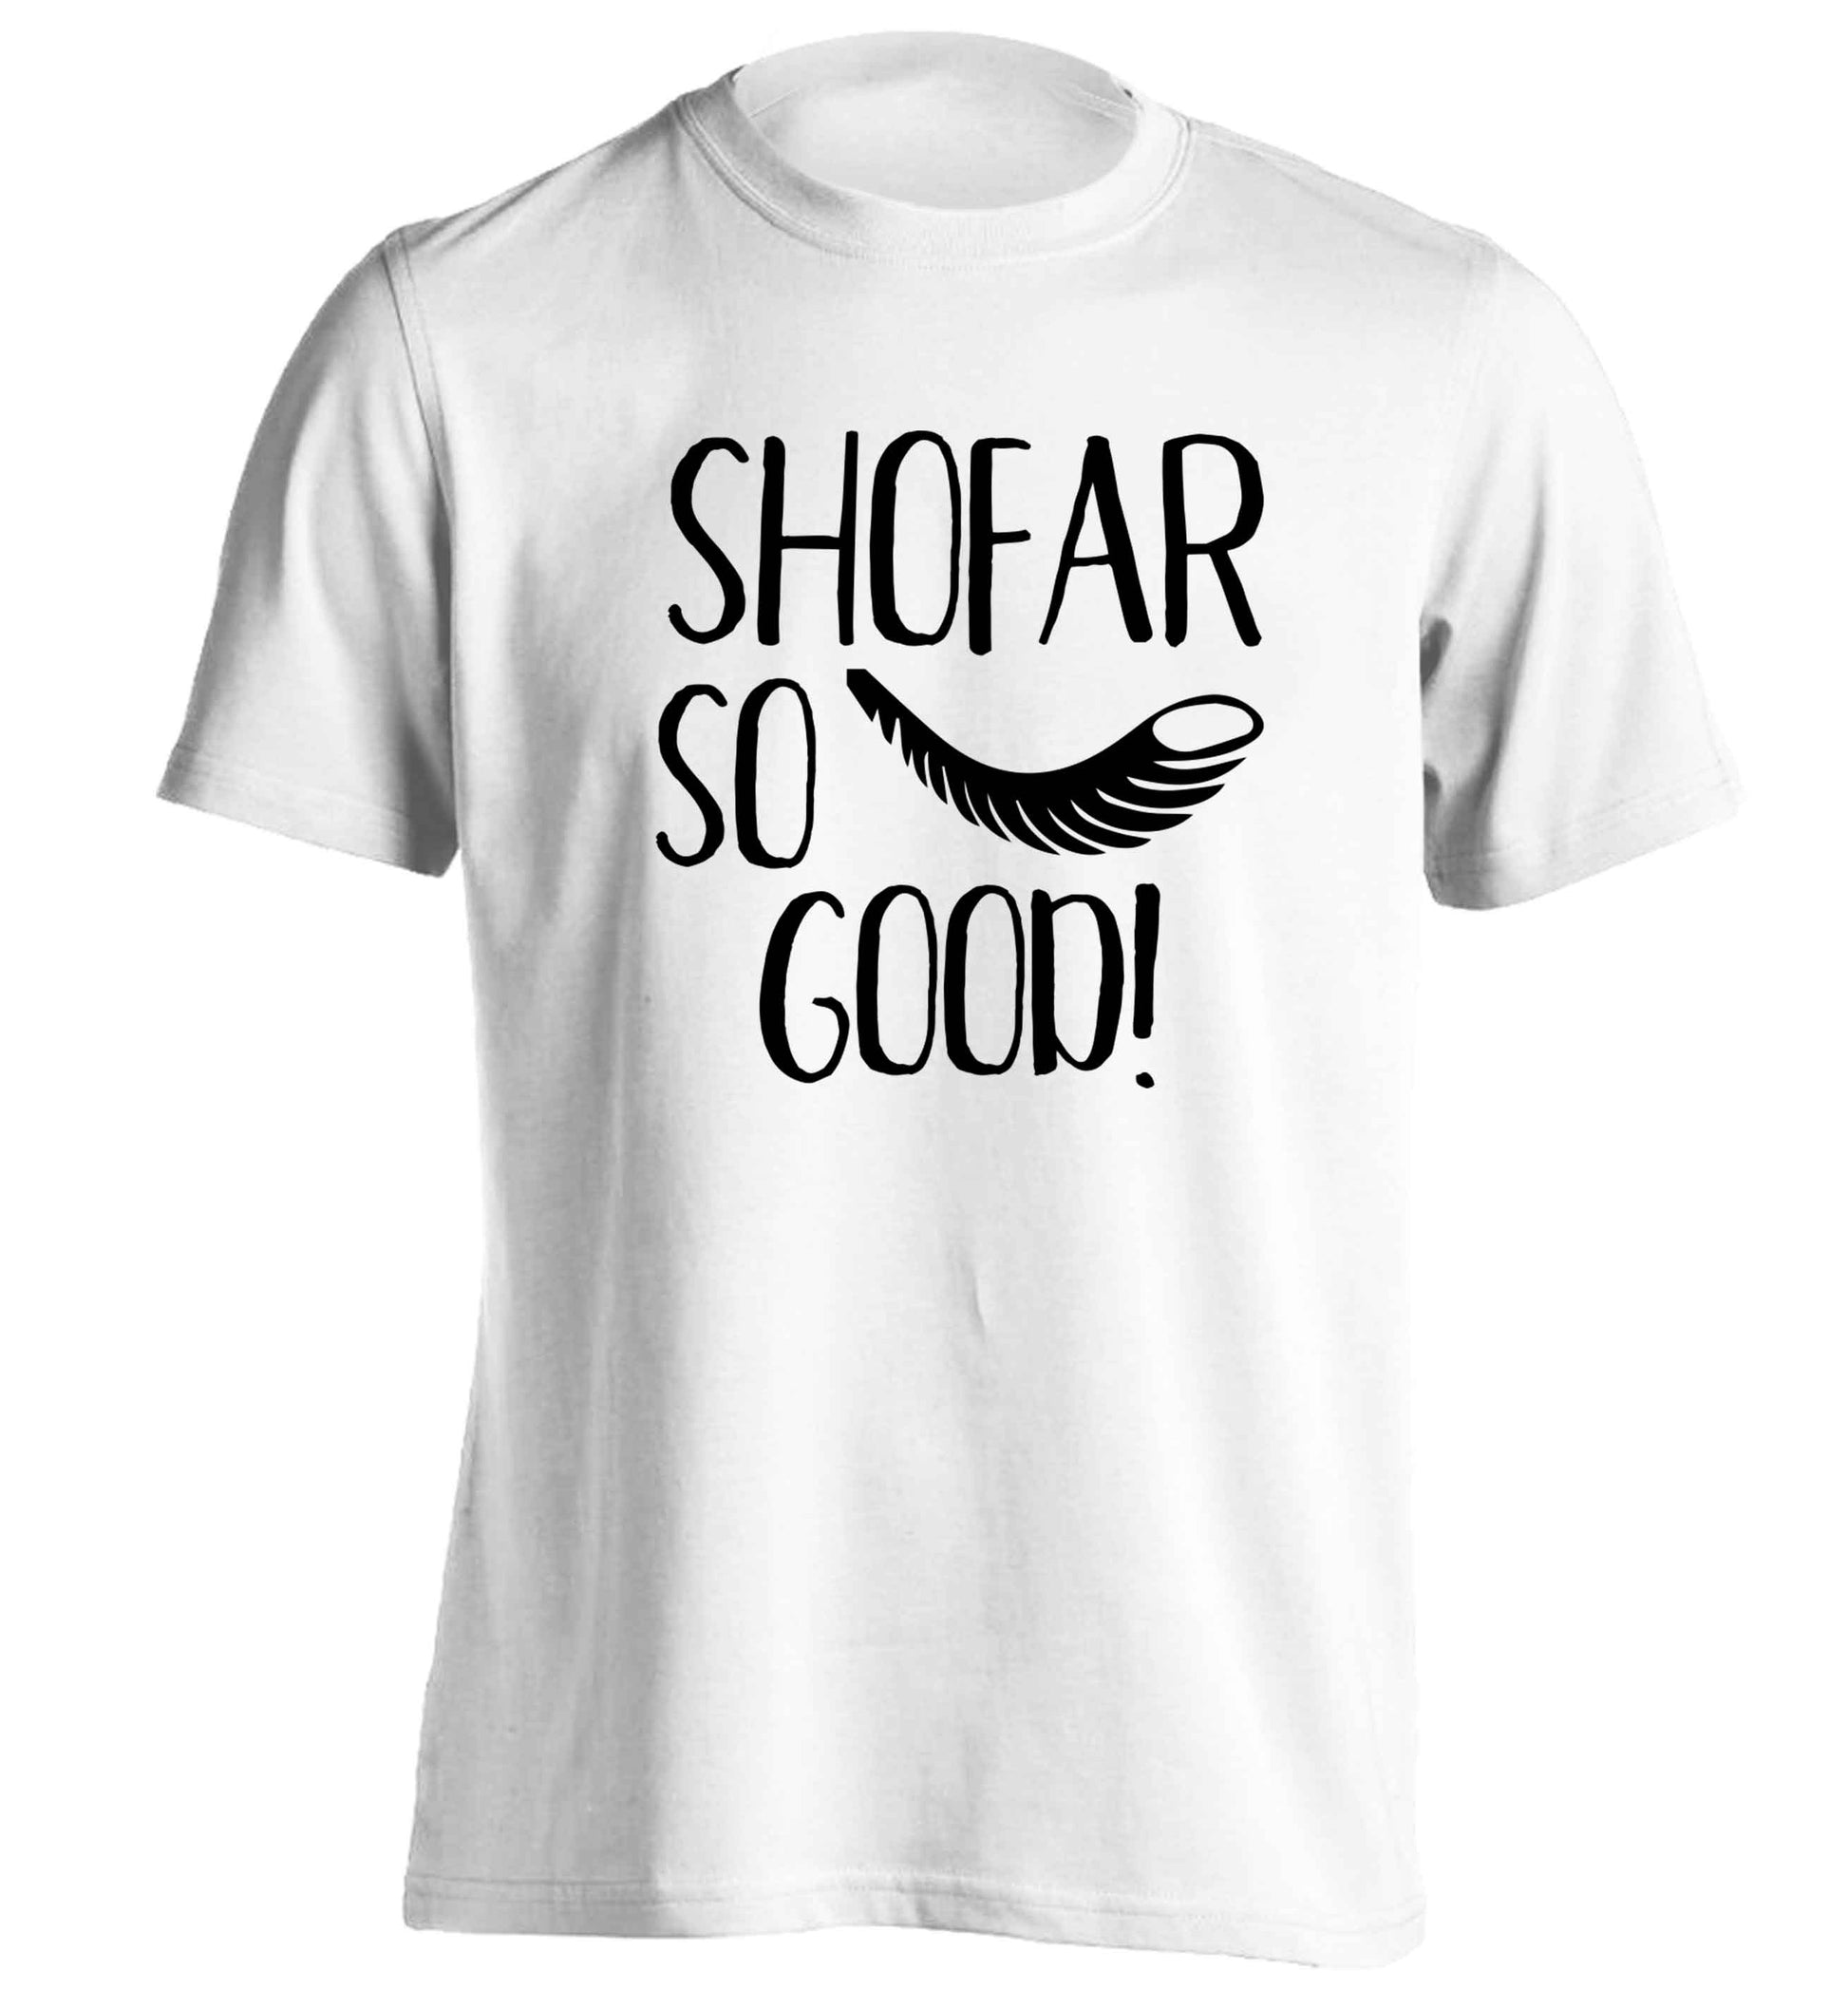 Shofar so good! adults unisex white Tshirt 2XL